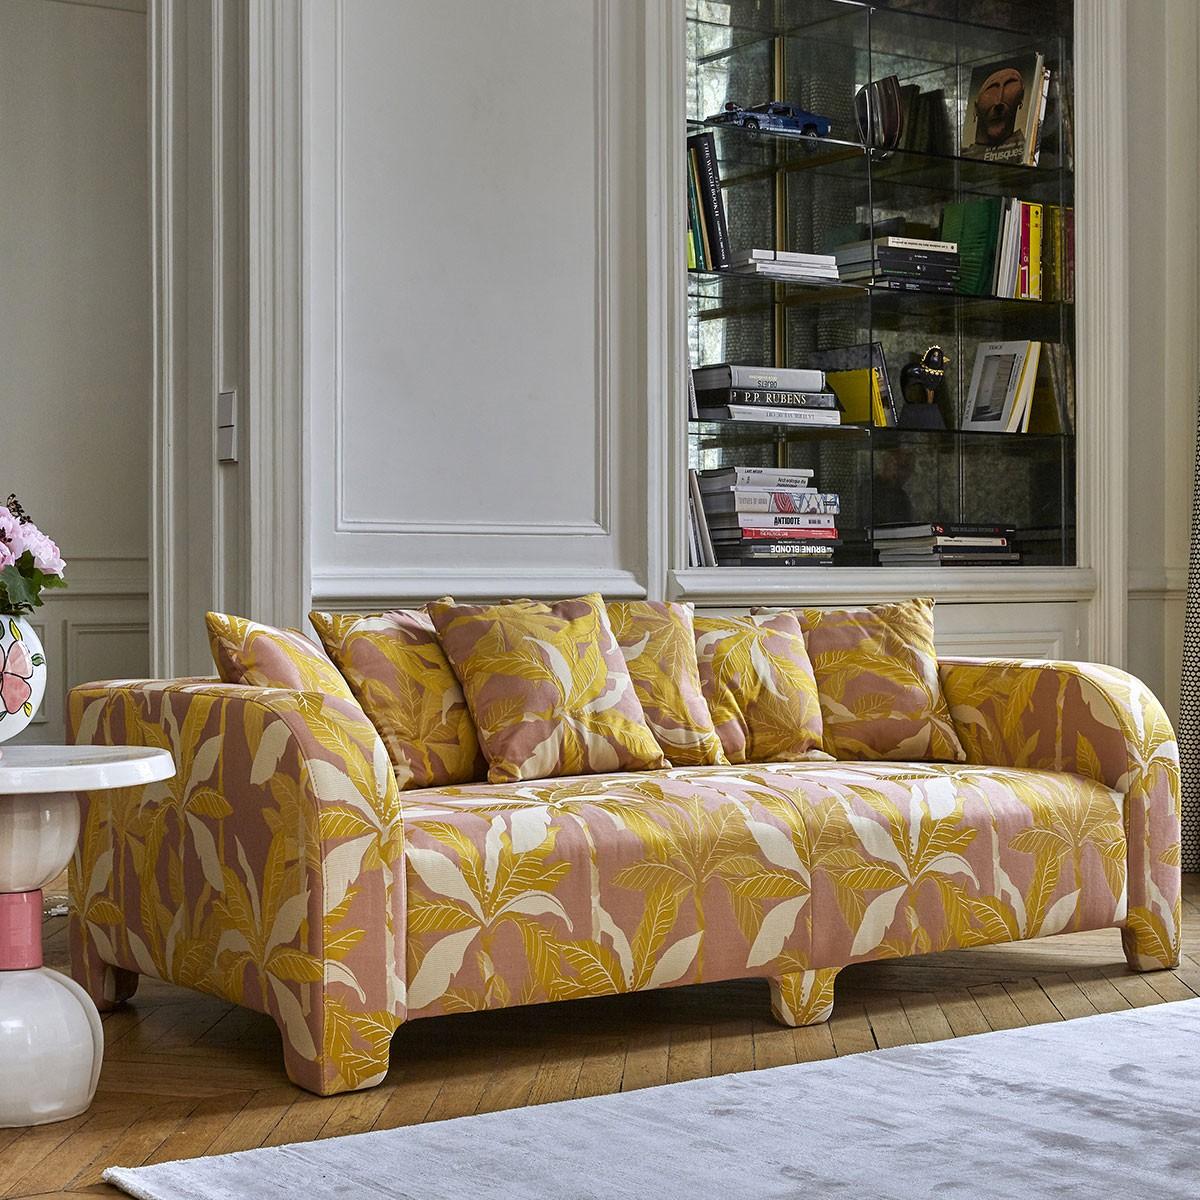 Popus Editions Graziella 4 Seater-Sofa aus rosa Miami-Jacquard-Stoff

Ein Fuß, der einen anderen verbirgt. Ein Kissen, das ein anderes verdeckt. Eine Kurve, die eine andere verbirgt, mit zeitgenössischen Linien und einem Sockel, der wie ein